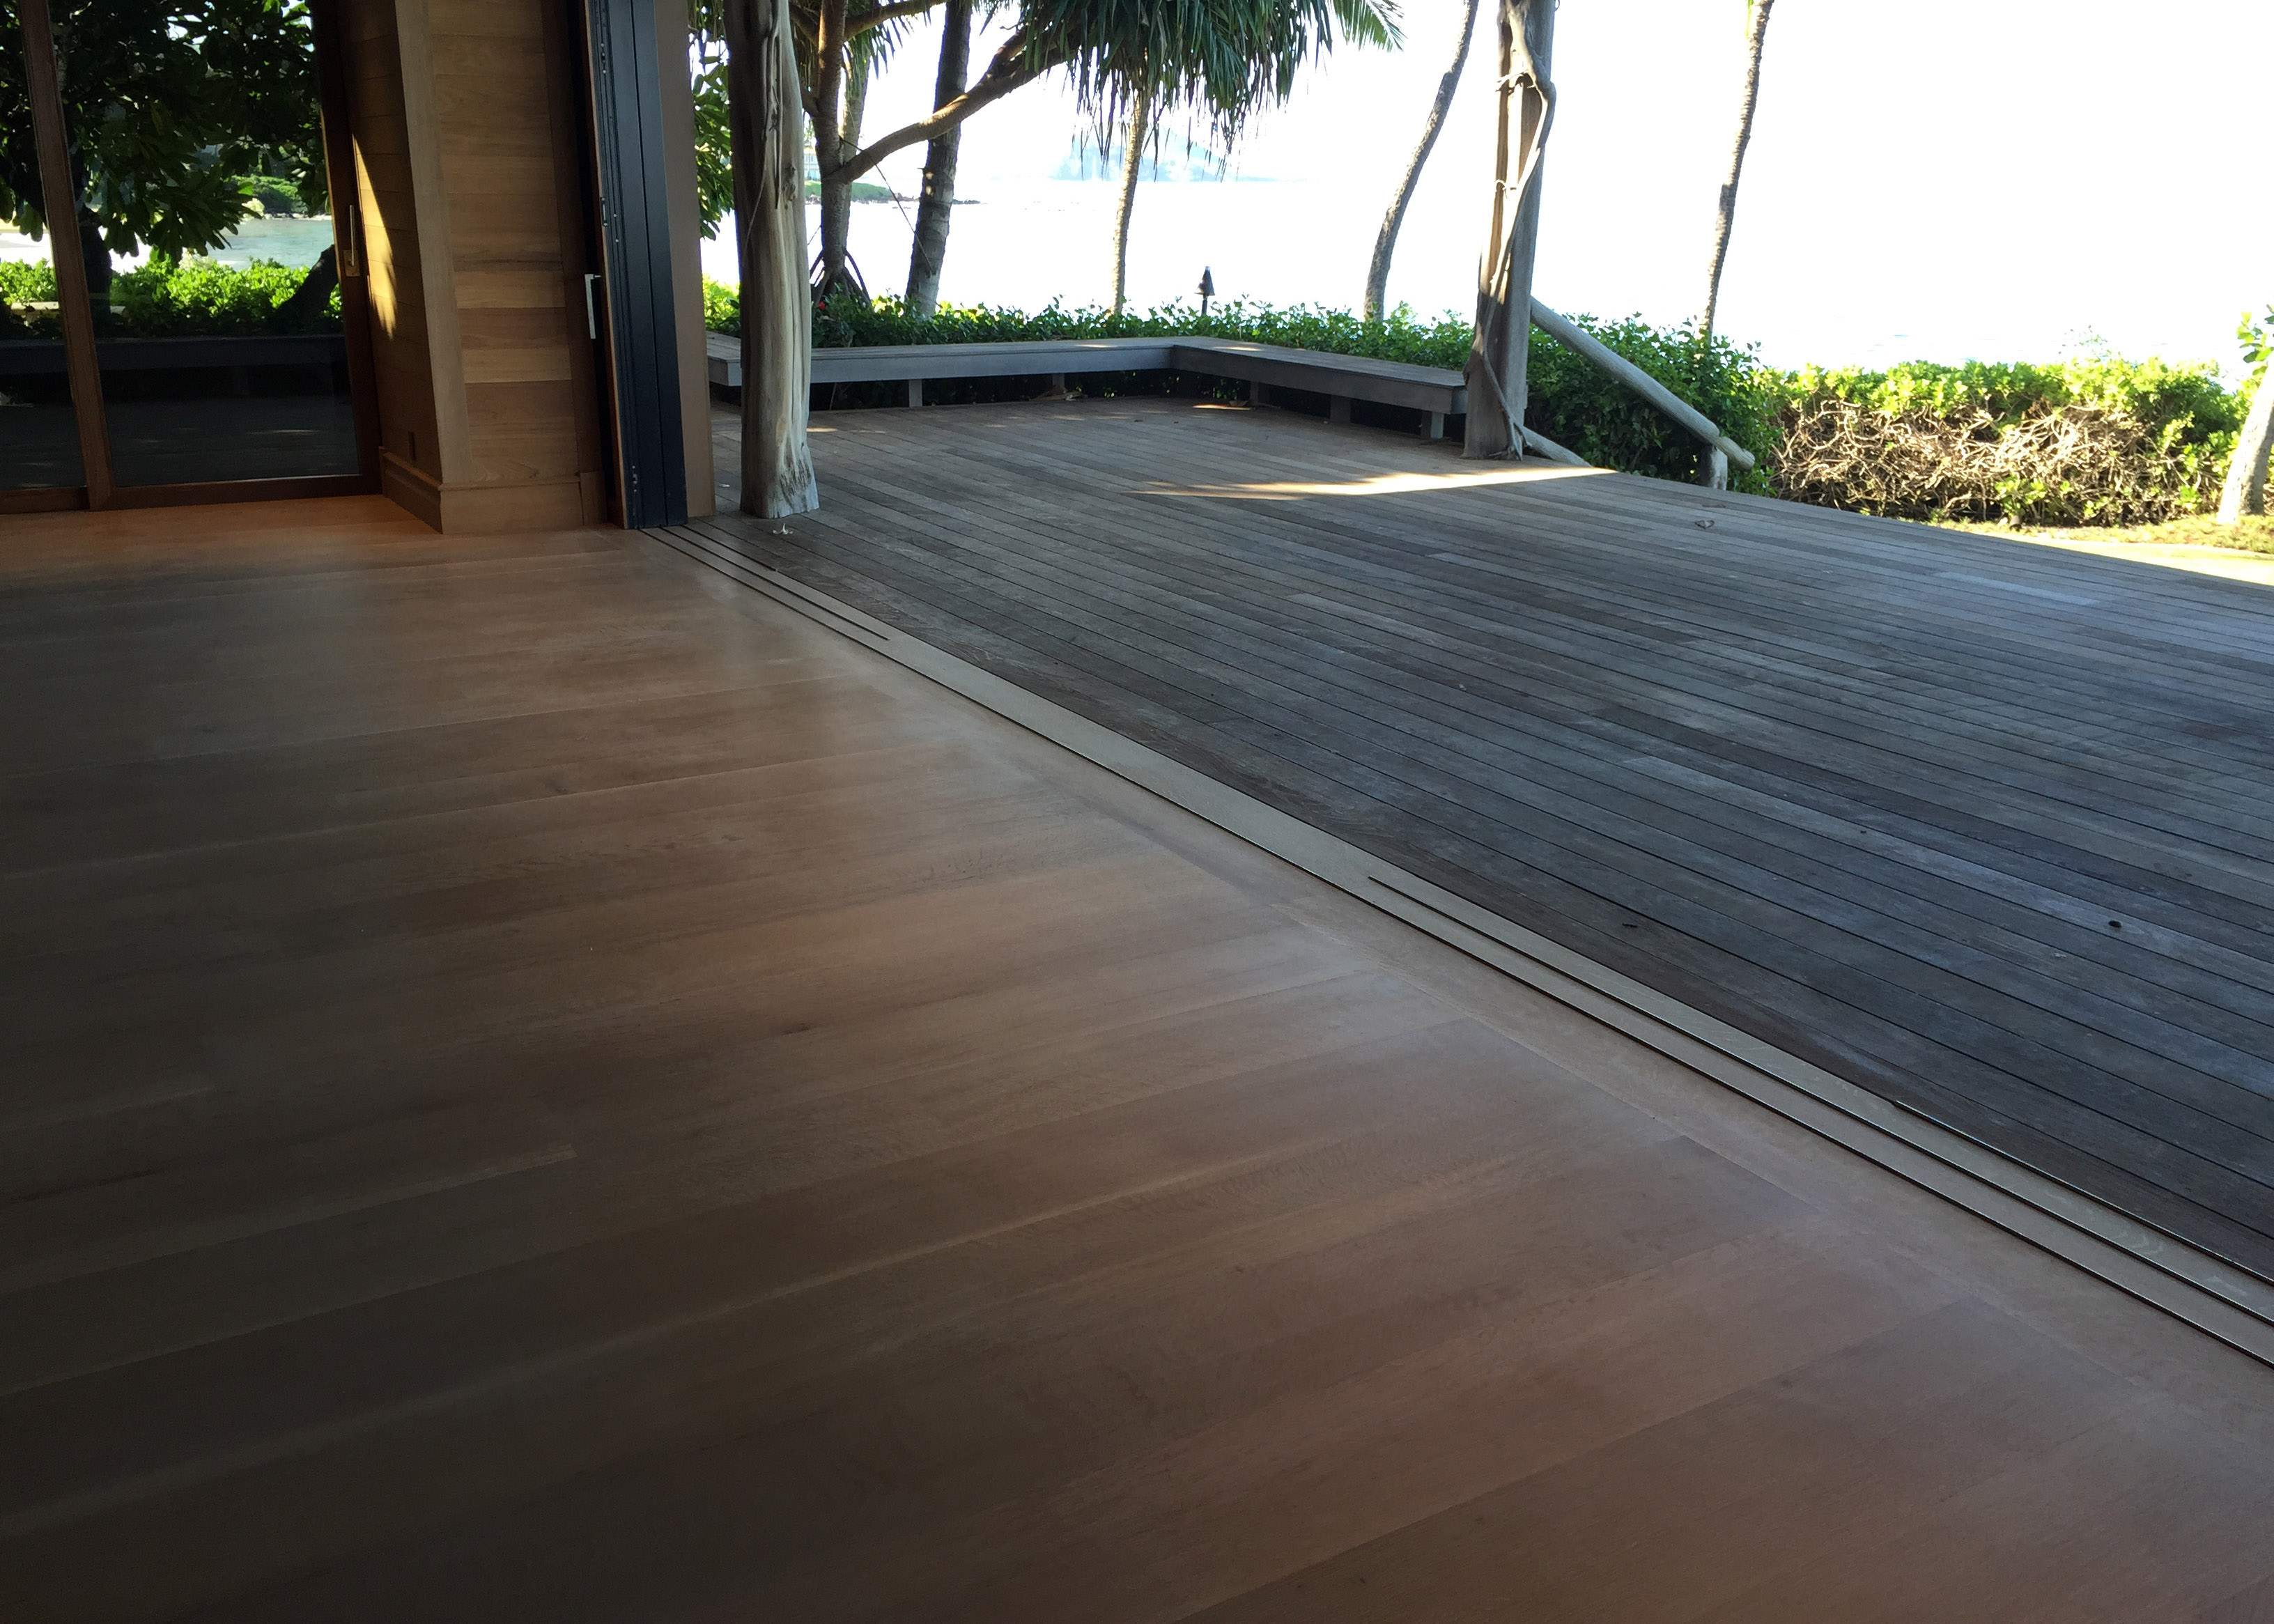 Rift Sawn White Oak Hardwood flooring in sliding door tracks in Makena Maui